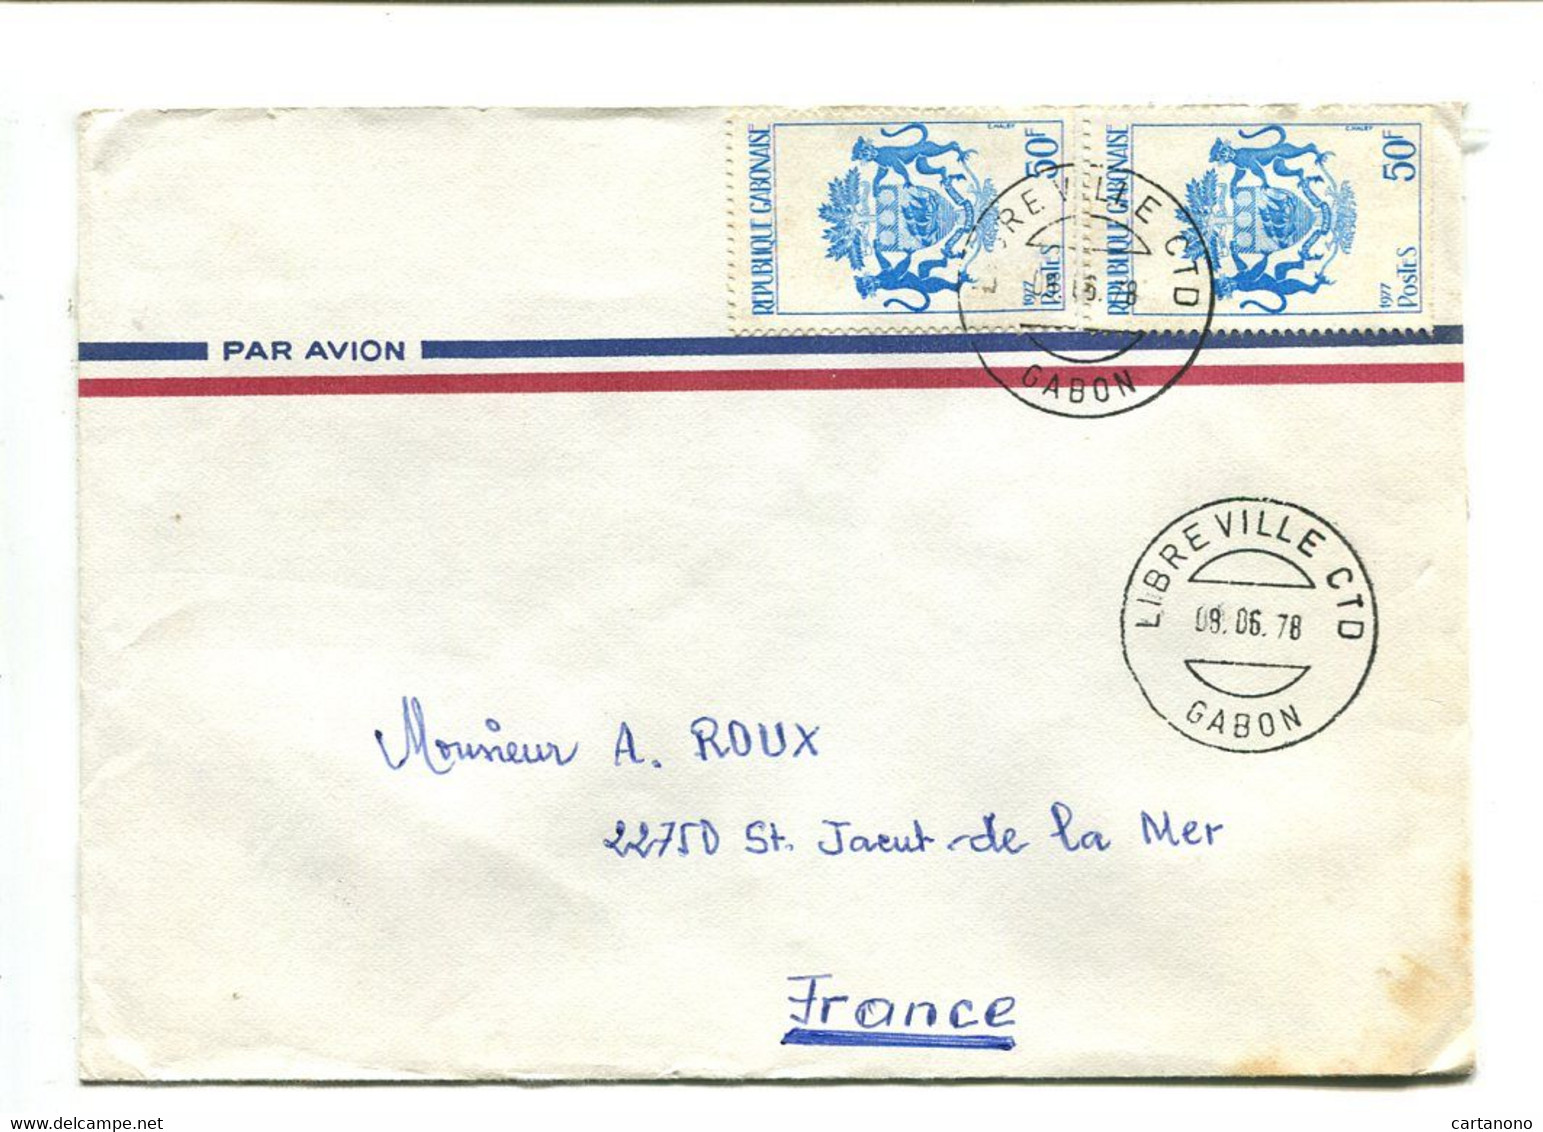 GABON Libreville CTD 1978 - Affranchissement Multiple Sur Lettre Par Avion - Héraldisme Blason - Gabon